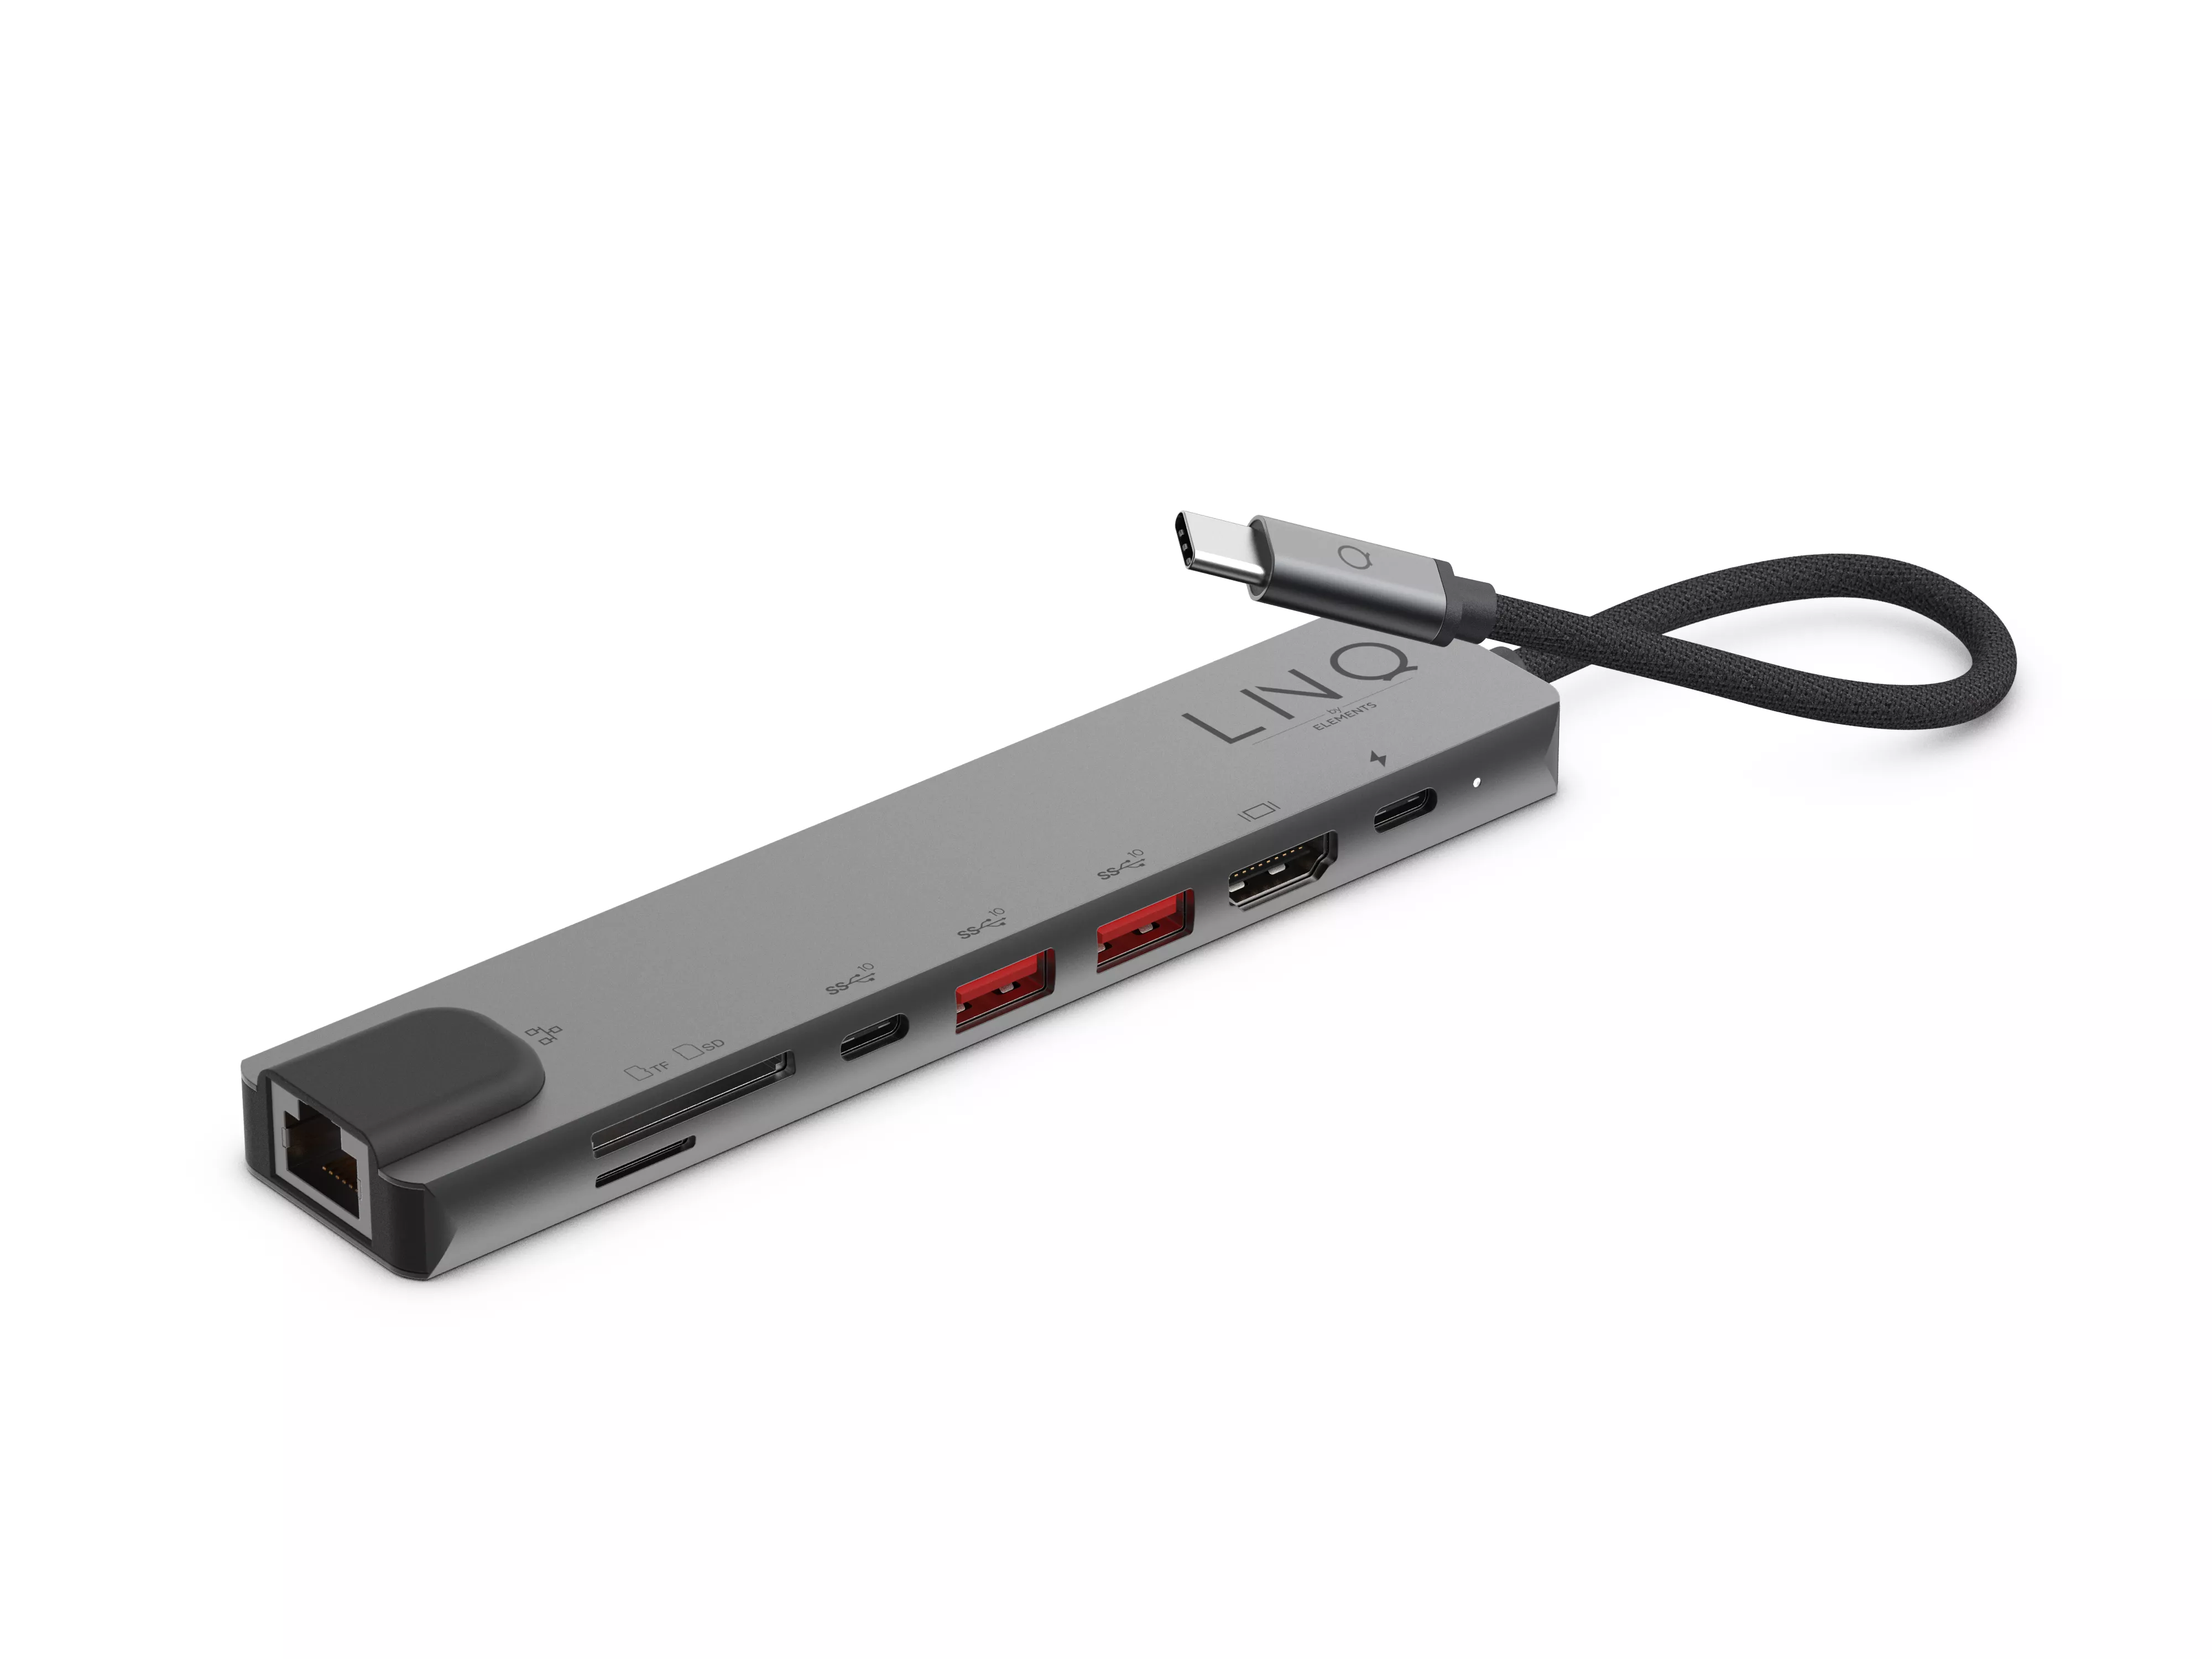 Vente LINQ byELEMENTS 8in1 Pro USB-C 10Gbps Multiport Hub LINQ byELEMENTS au meilleur prix - visuel 4